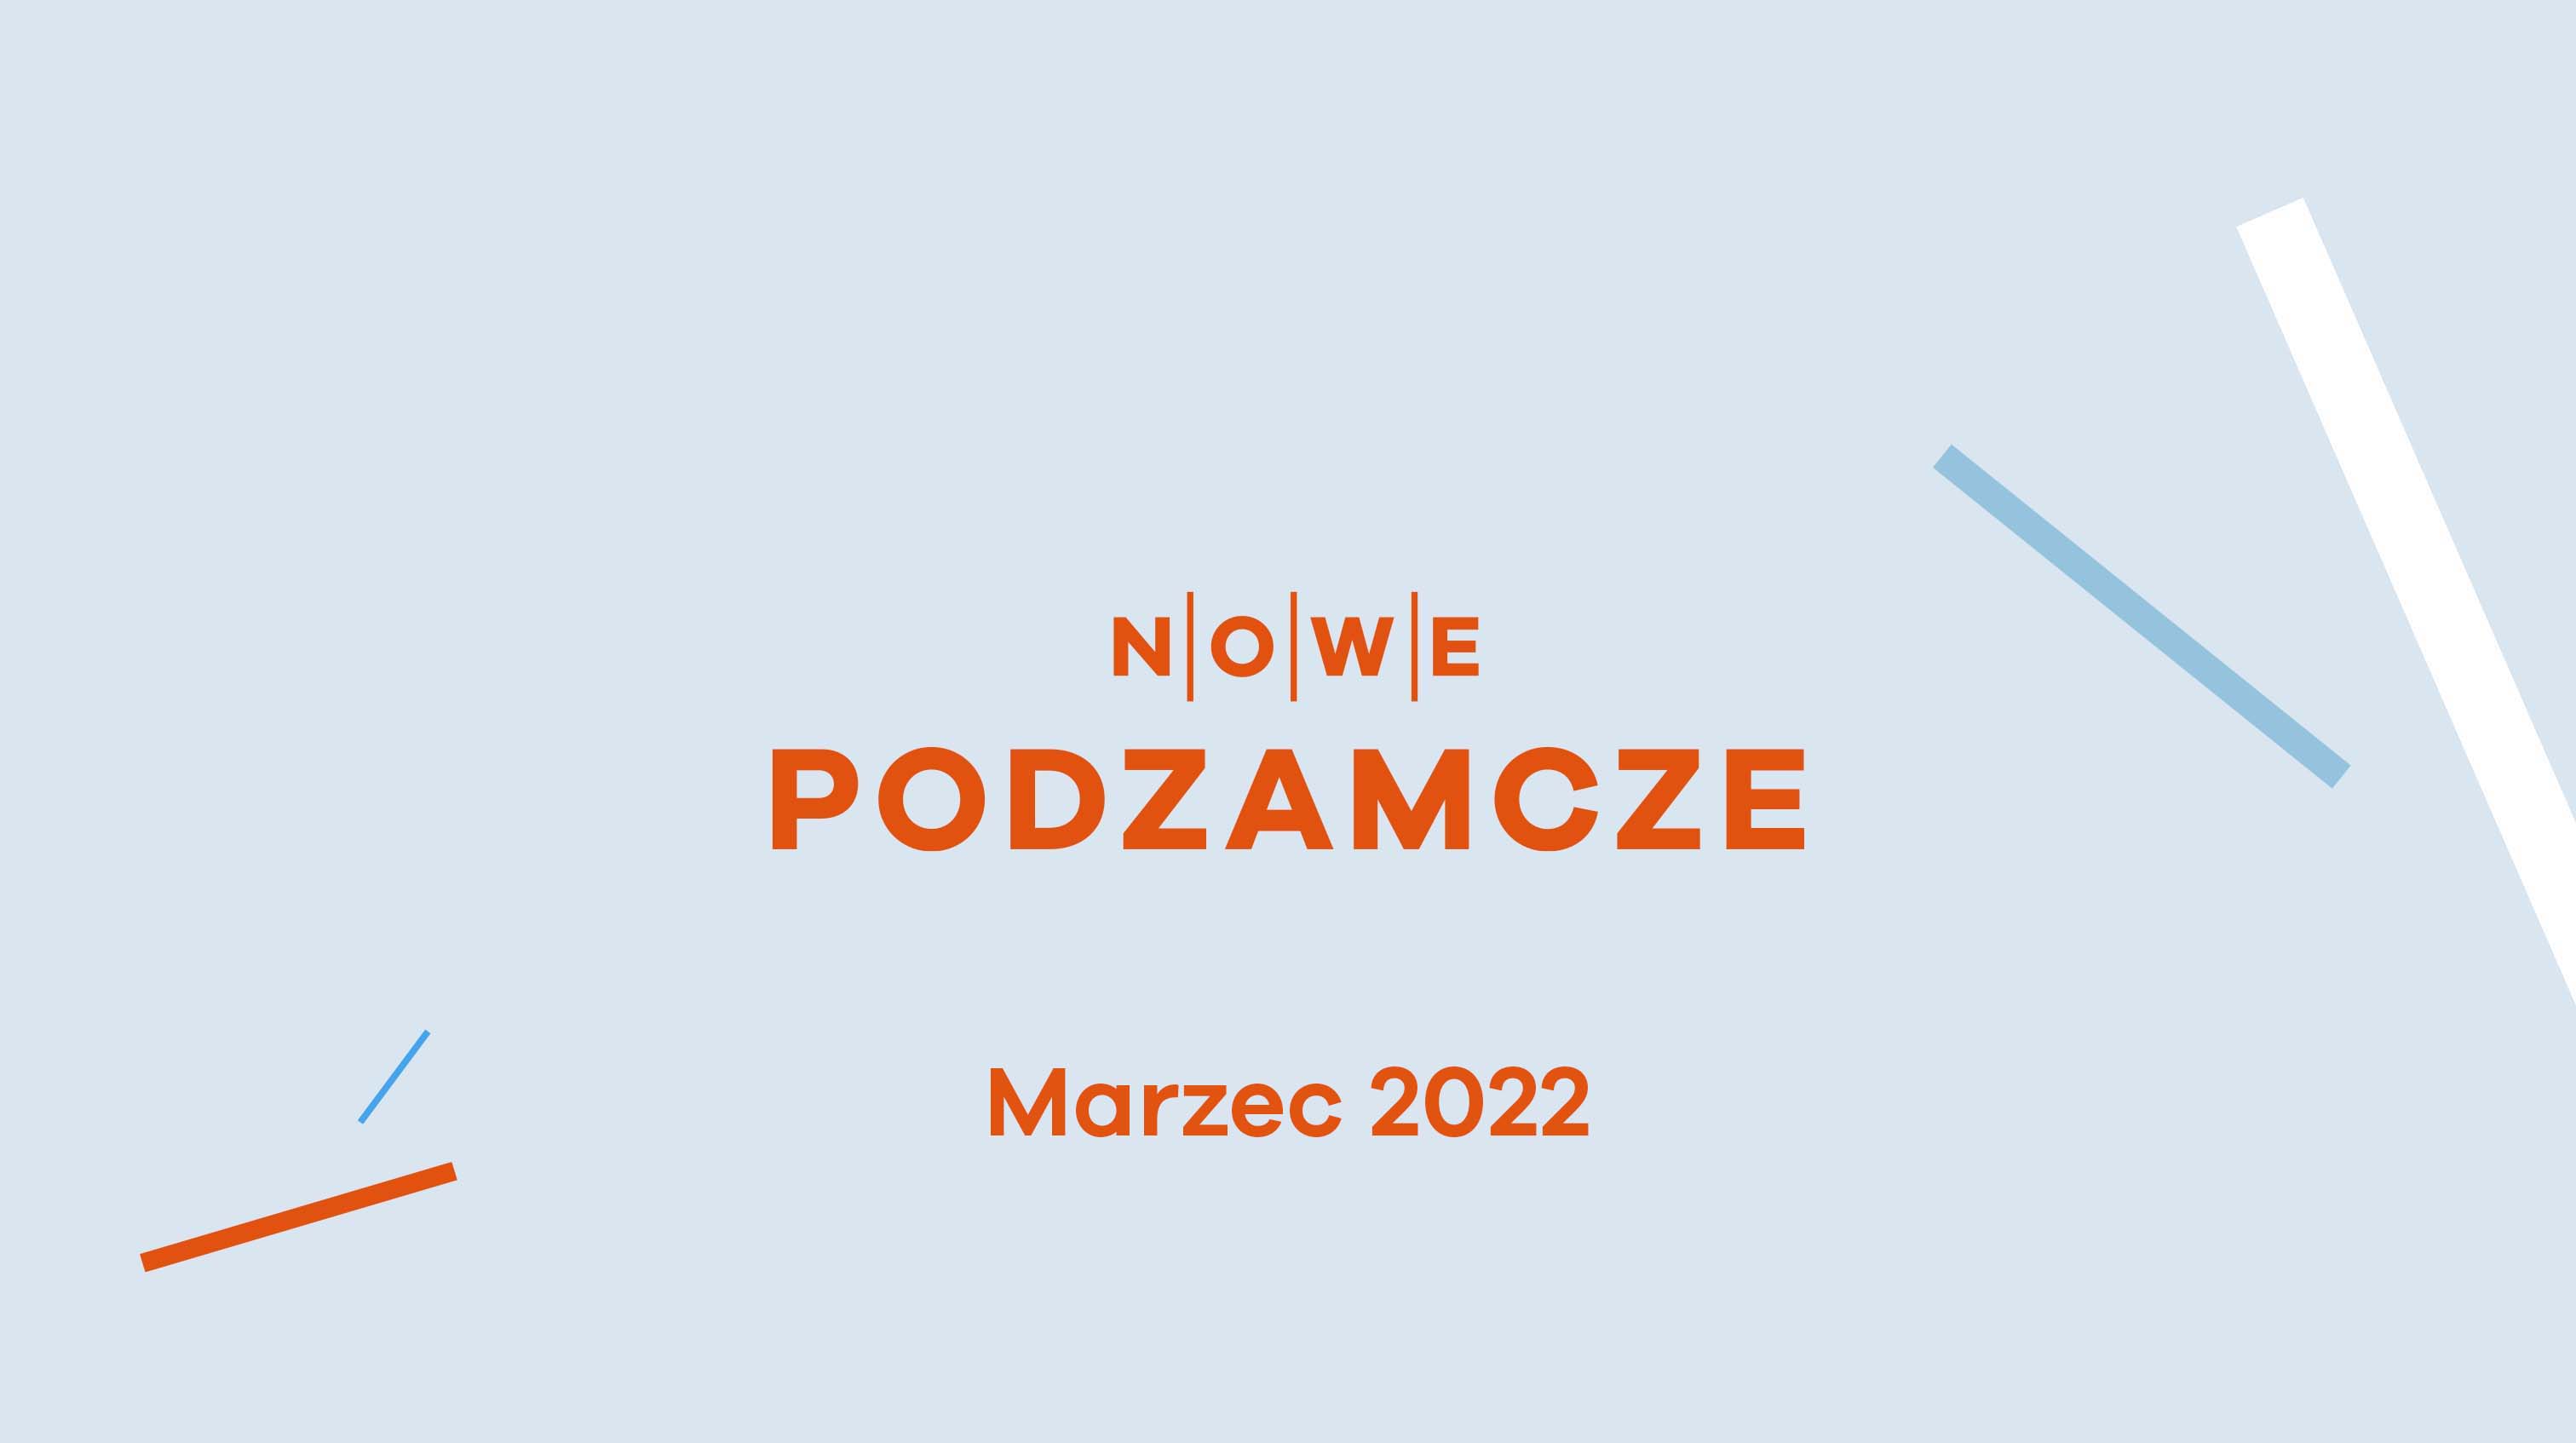 Nowe Podzamcze, Dziennik budowy - Nowe Podzamcze w Wałbrzychu - styczeń 2022